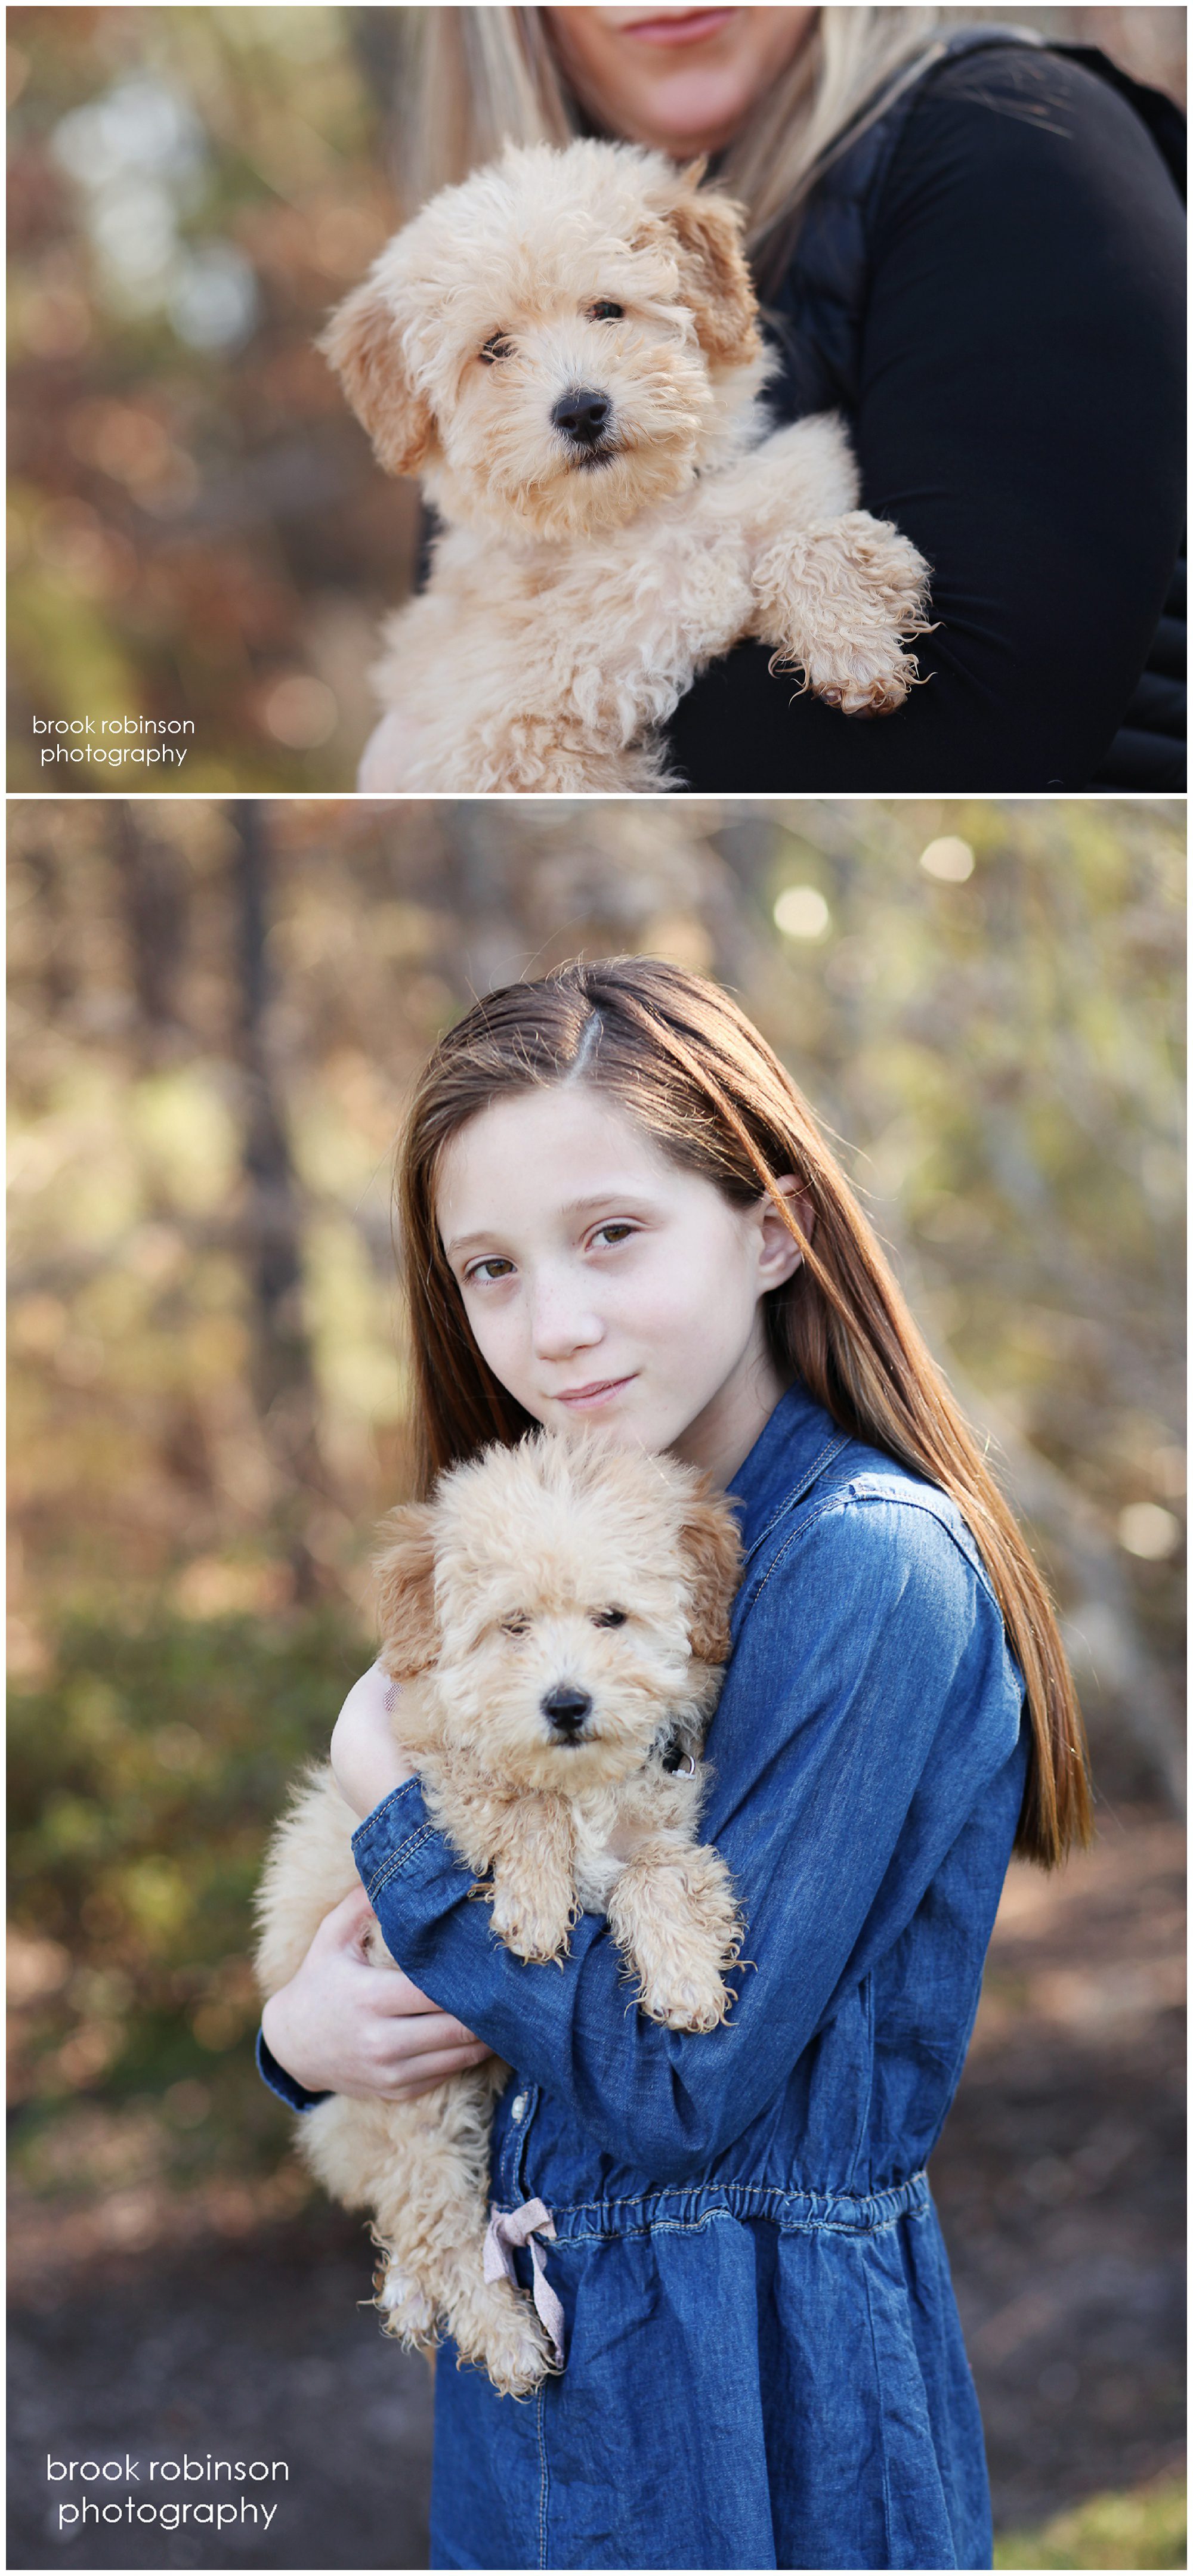 richmond glen allen family portrait photographer pet dog mini golden doodle puppy sisters